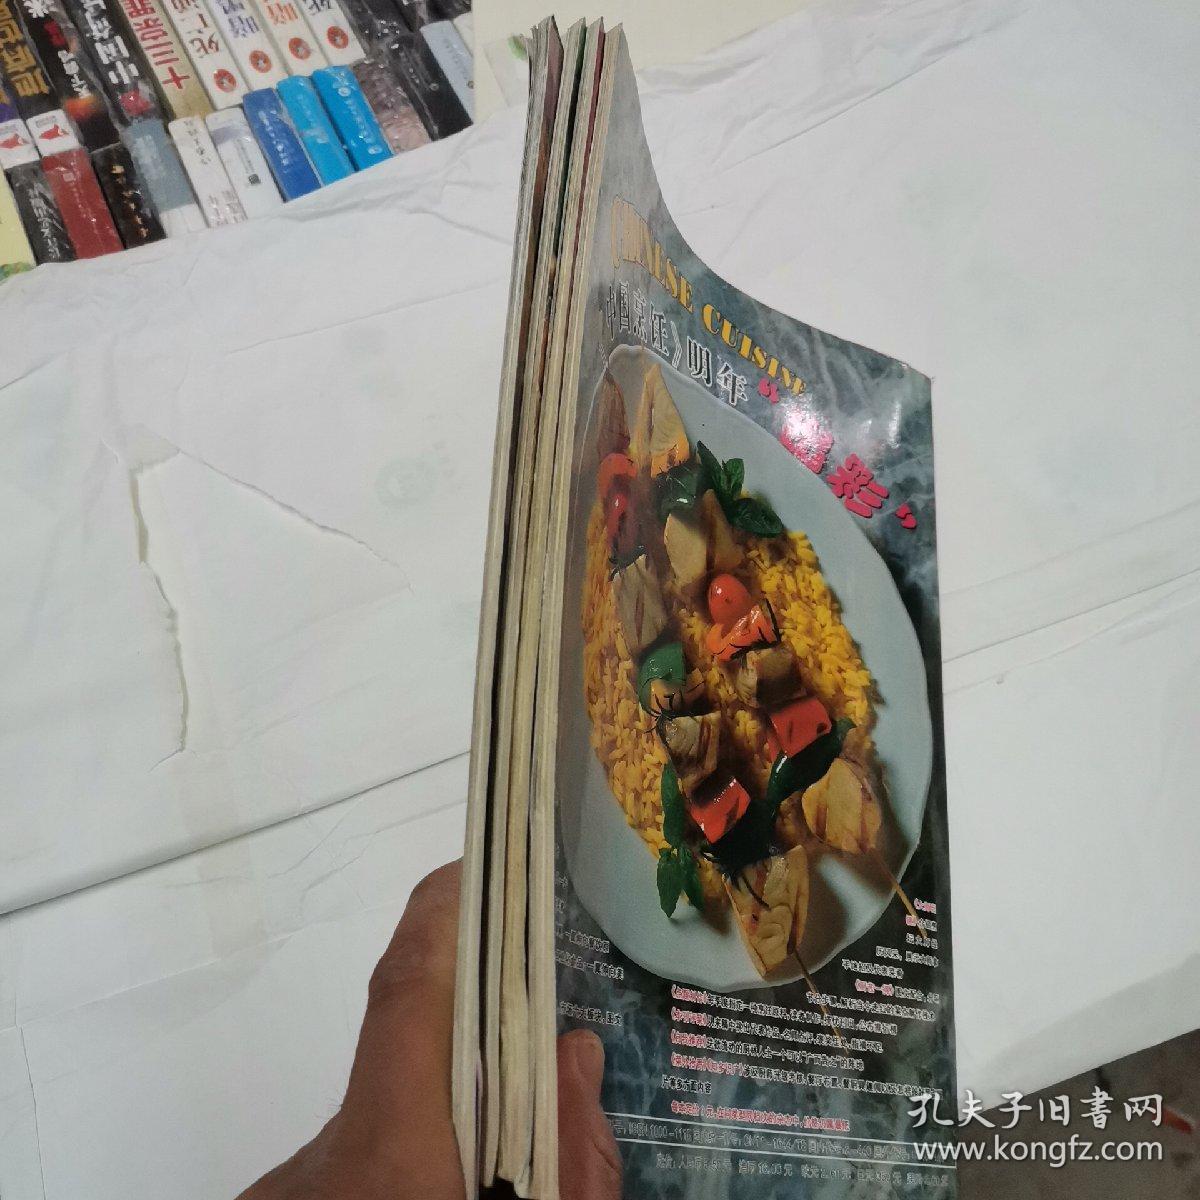 中国烹饪2000年4、6、11、12四本合售